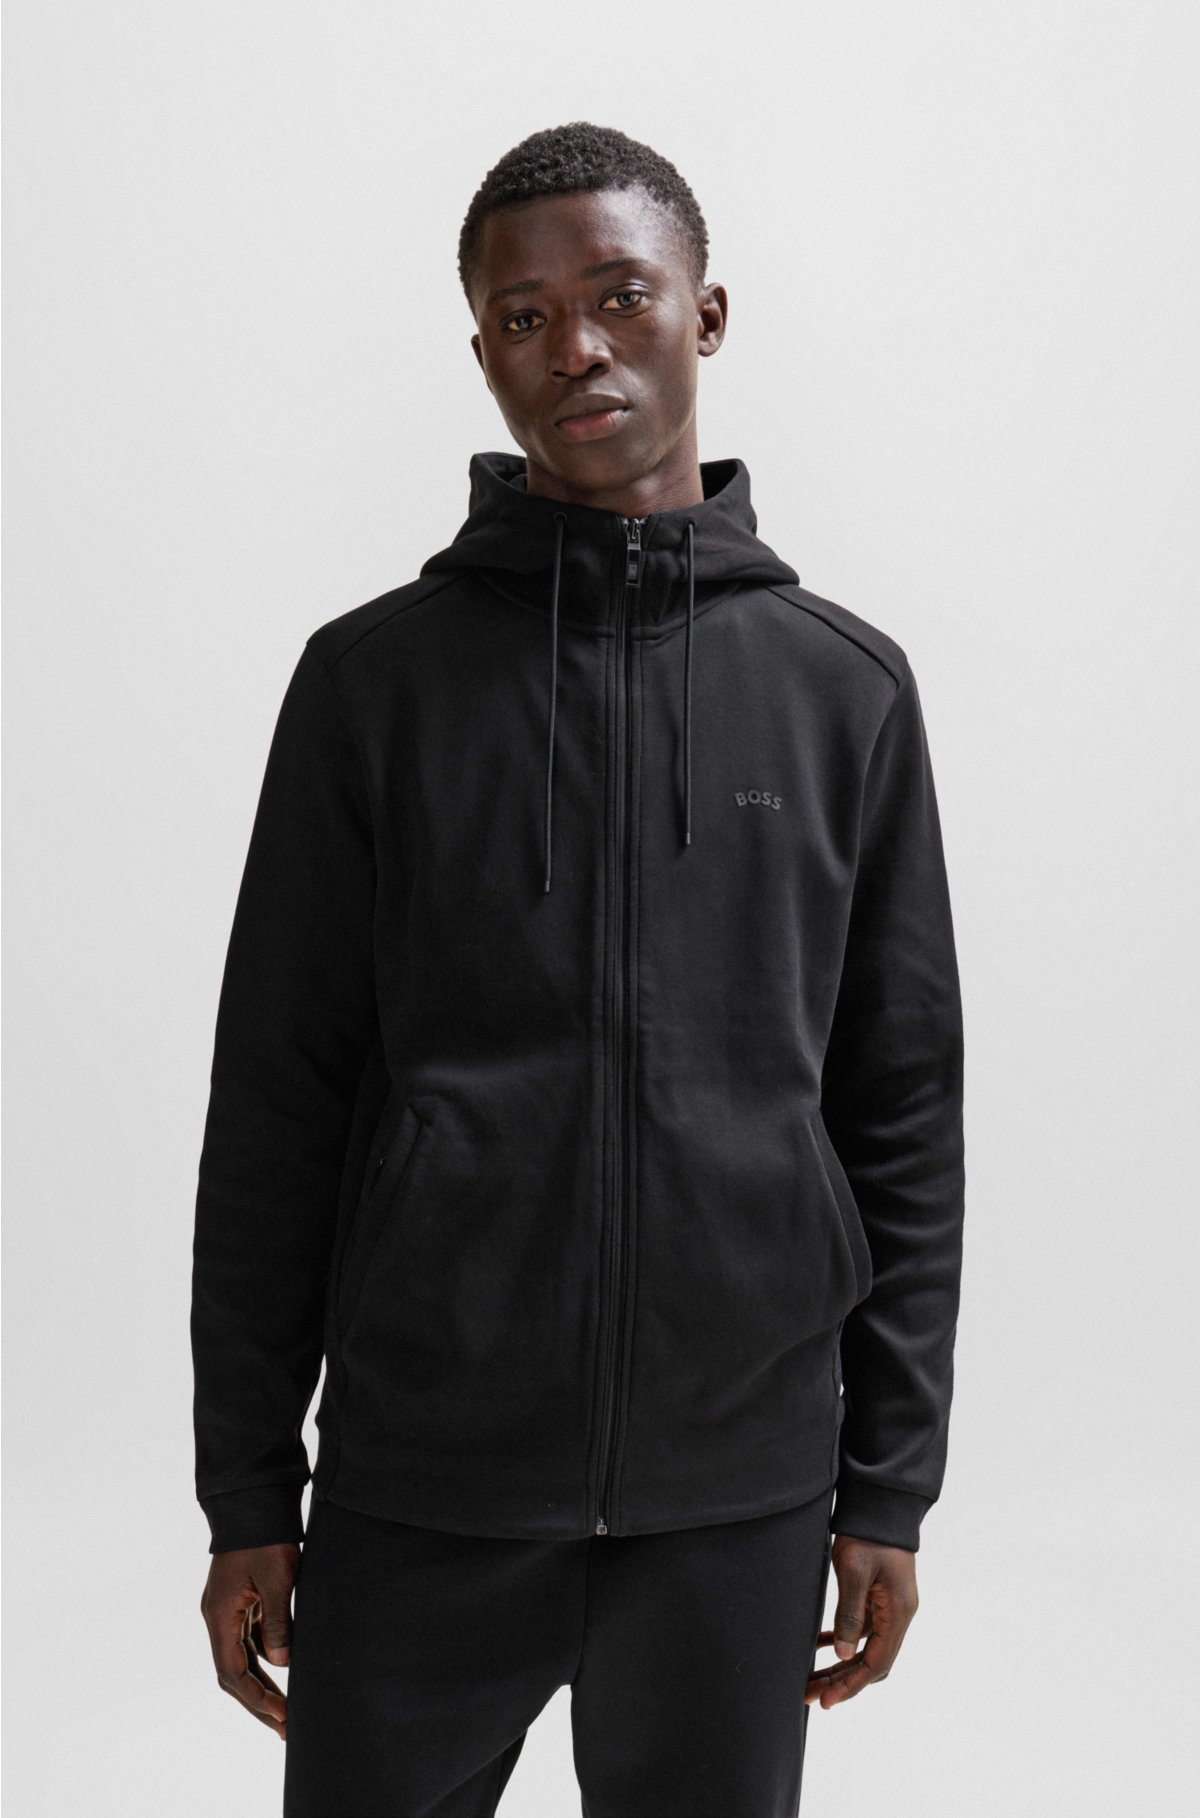 BOSS - Interlock-cotton zip-up hoodie with piqué panel